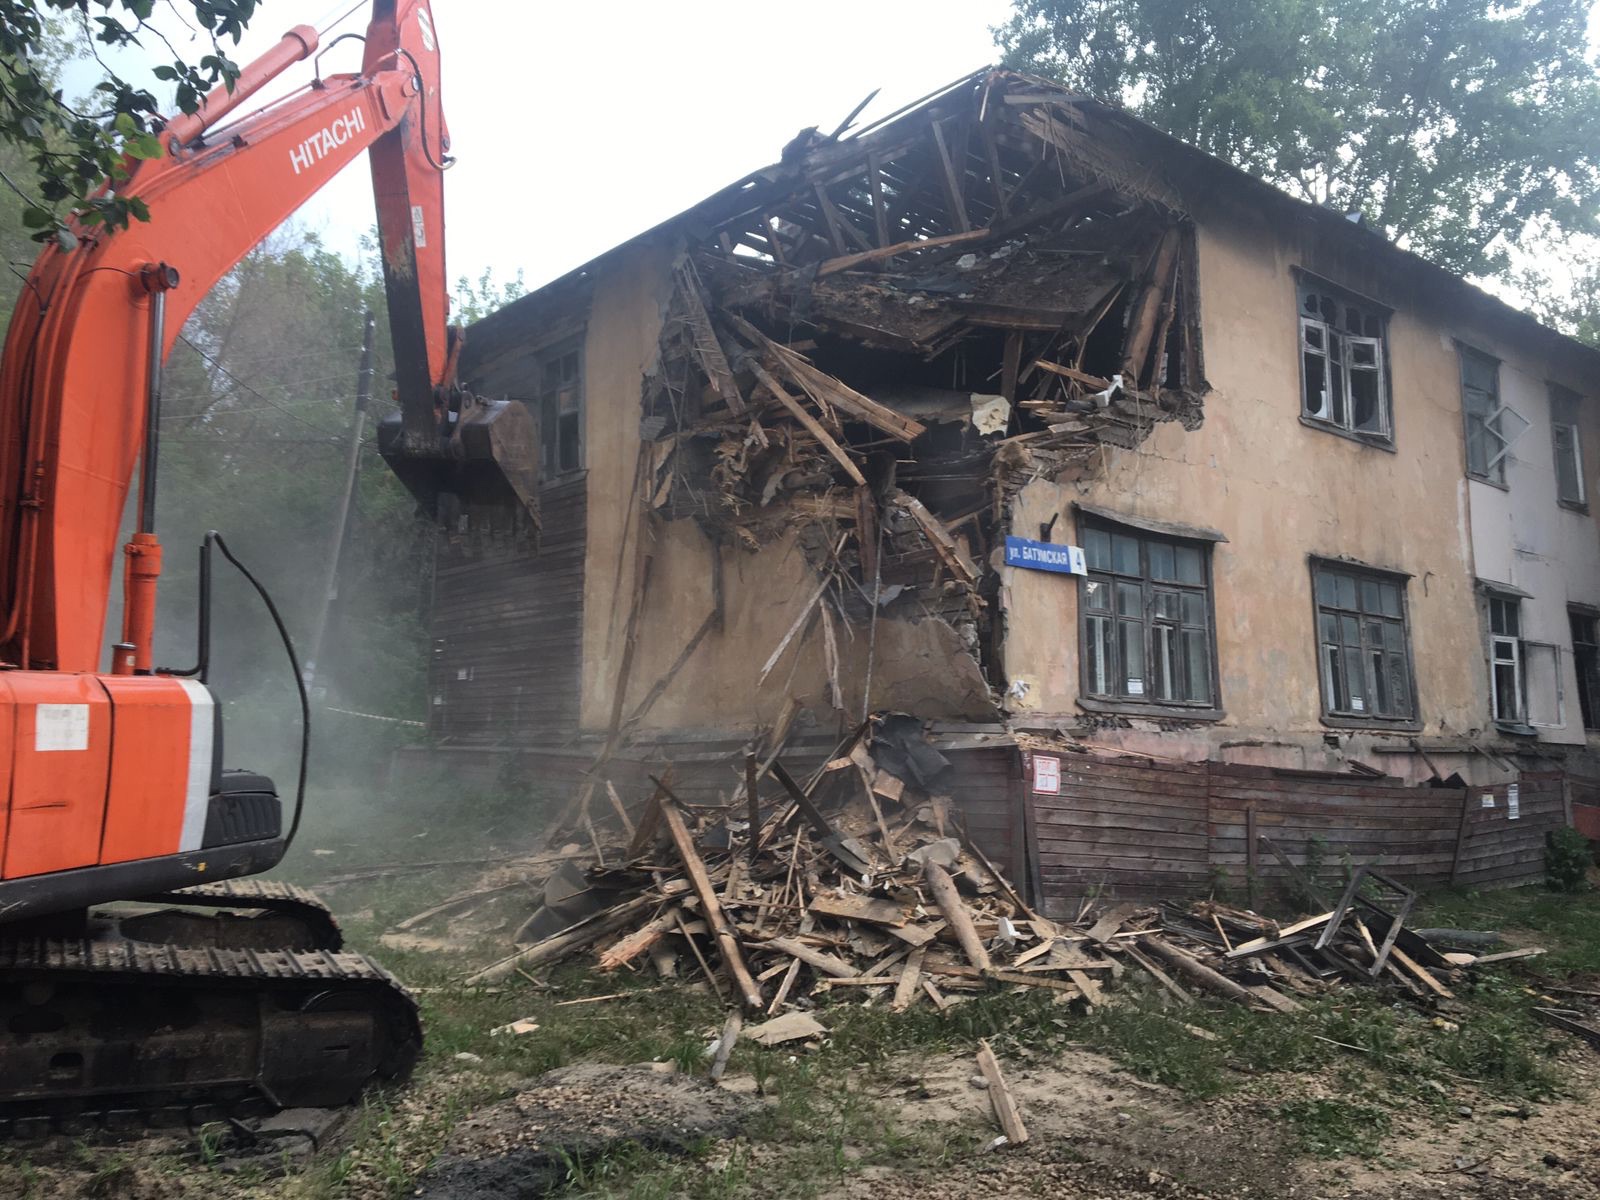 Мэрия Нижнего Новгорода планирует снести еще один аварийный дом на Батумской  - фото 1